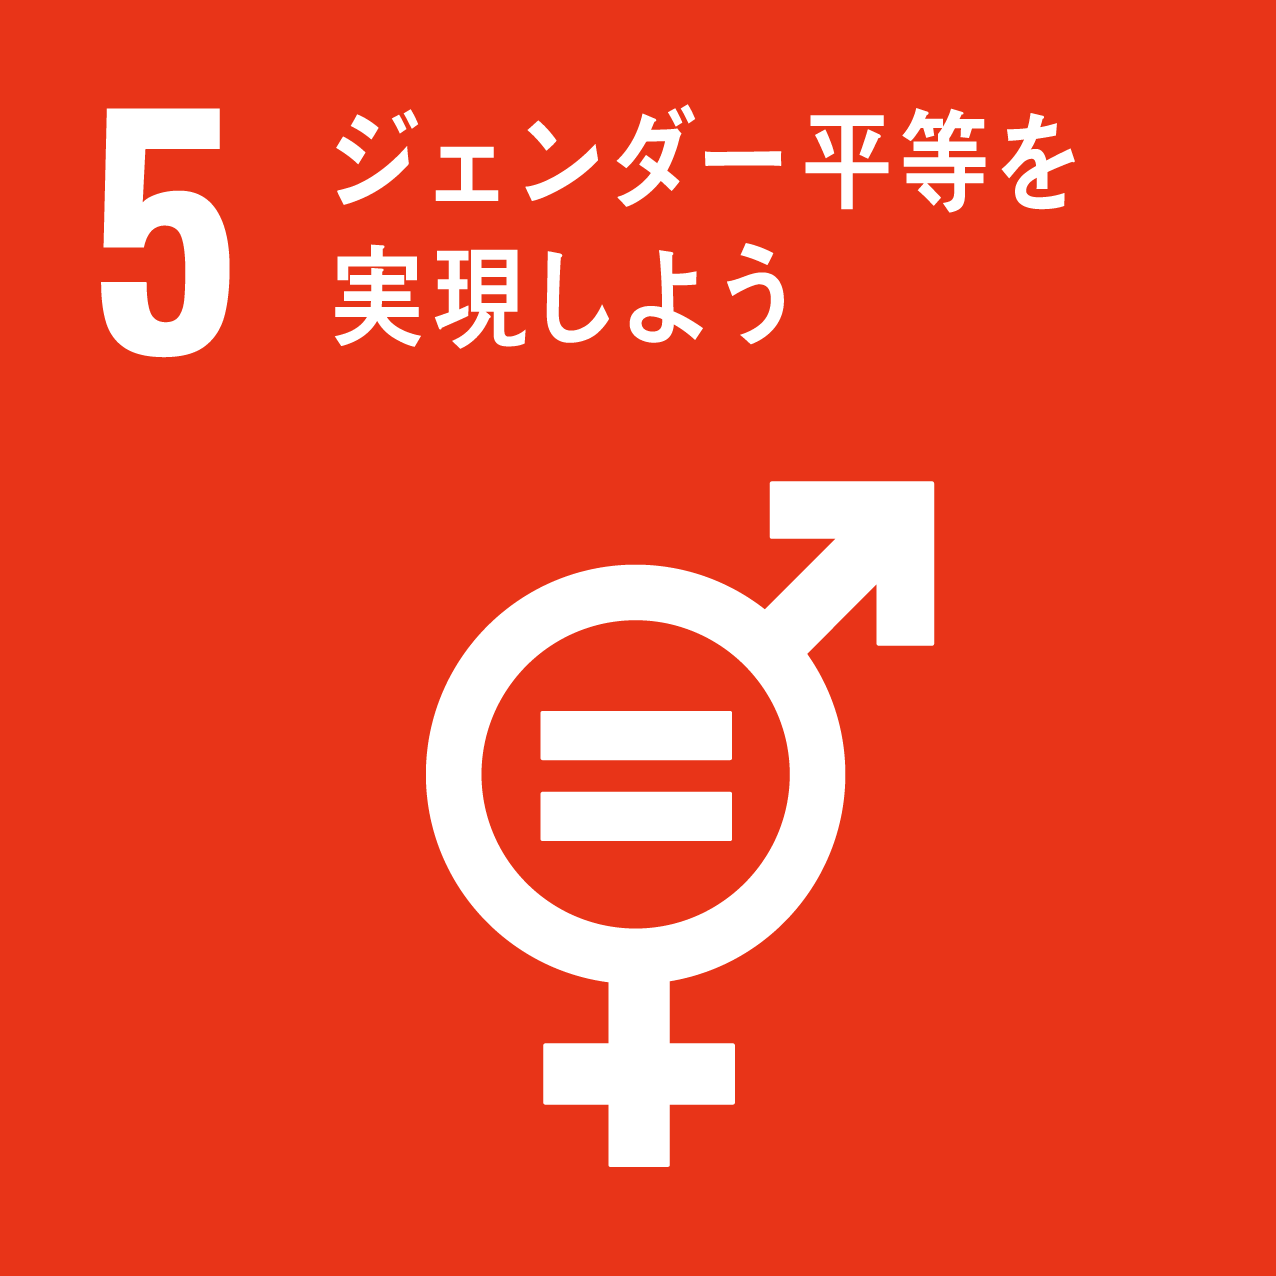 SDGs目標5: ジェンダー平等を実現しよう | アズトモギャラリー